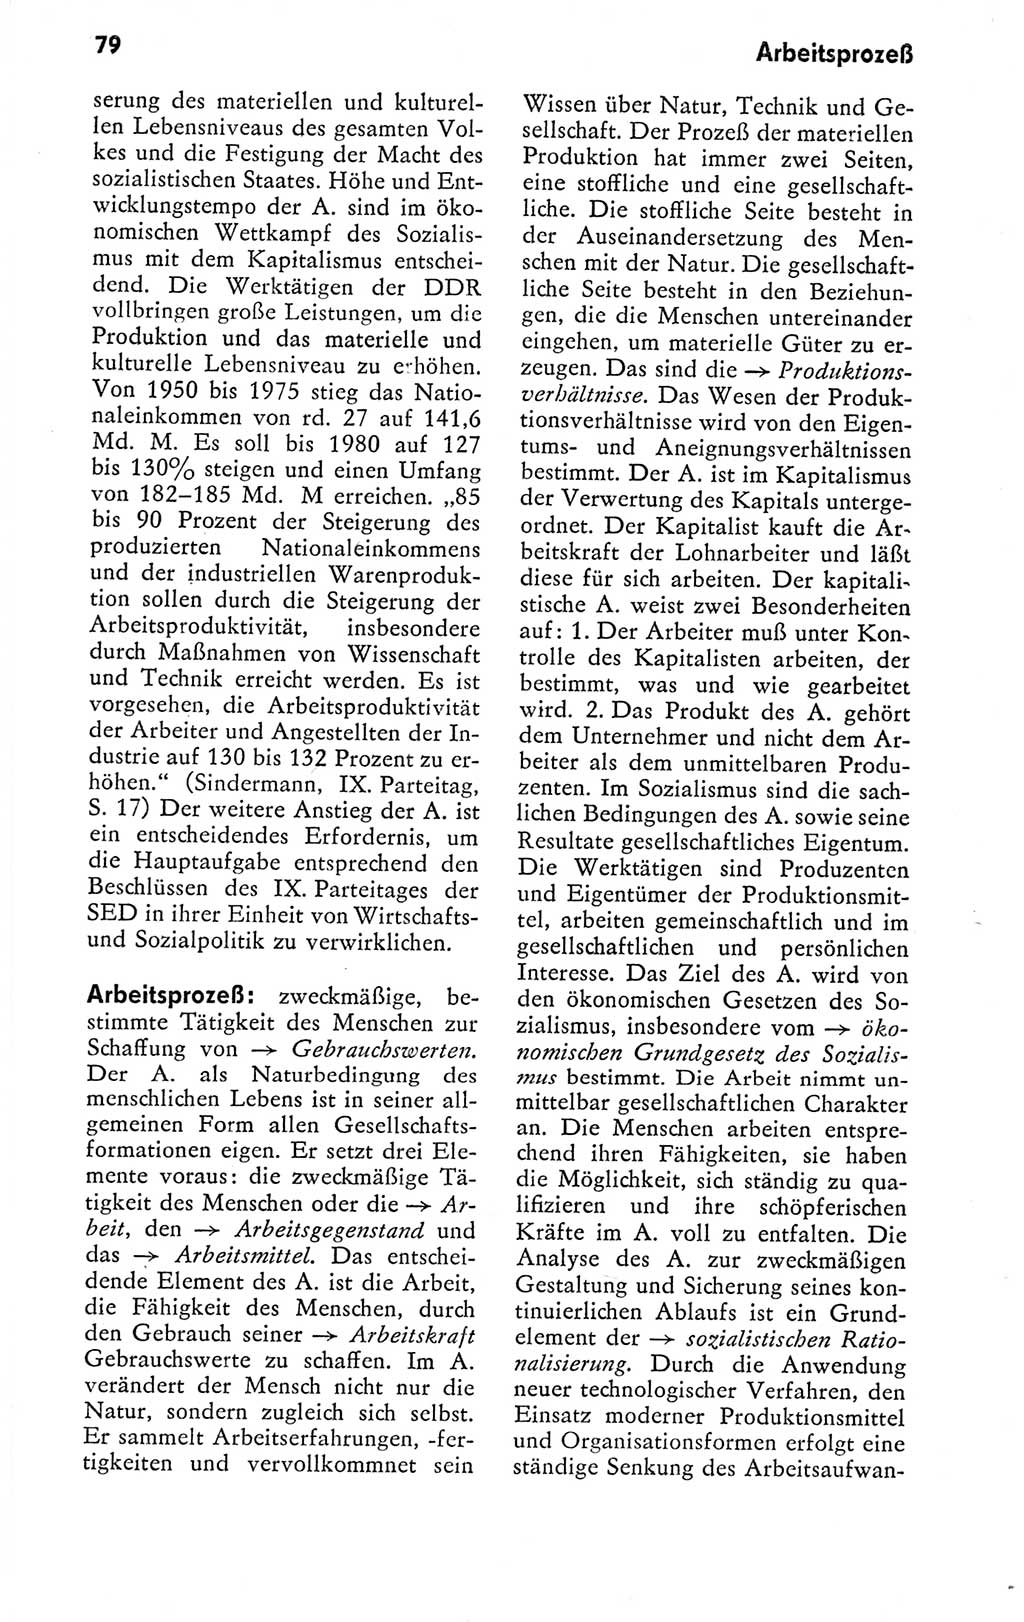 Kleines politisches Wörterbuch [Deutsche Demokratische Republik (DDR)] 1978, Seite 79 (Kl. pol. Wb. DDR 1978, S. 79)